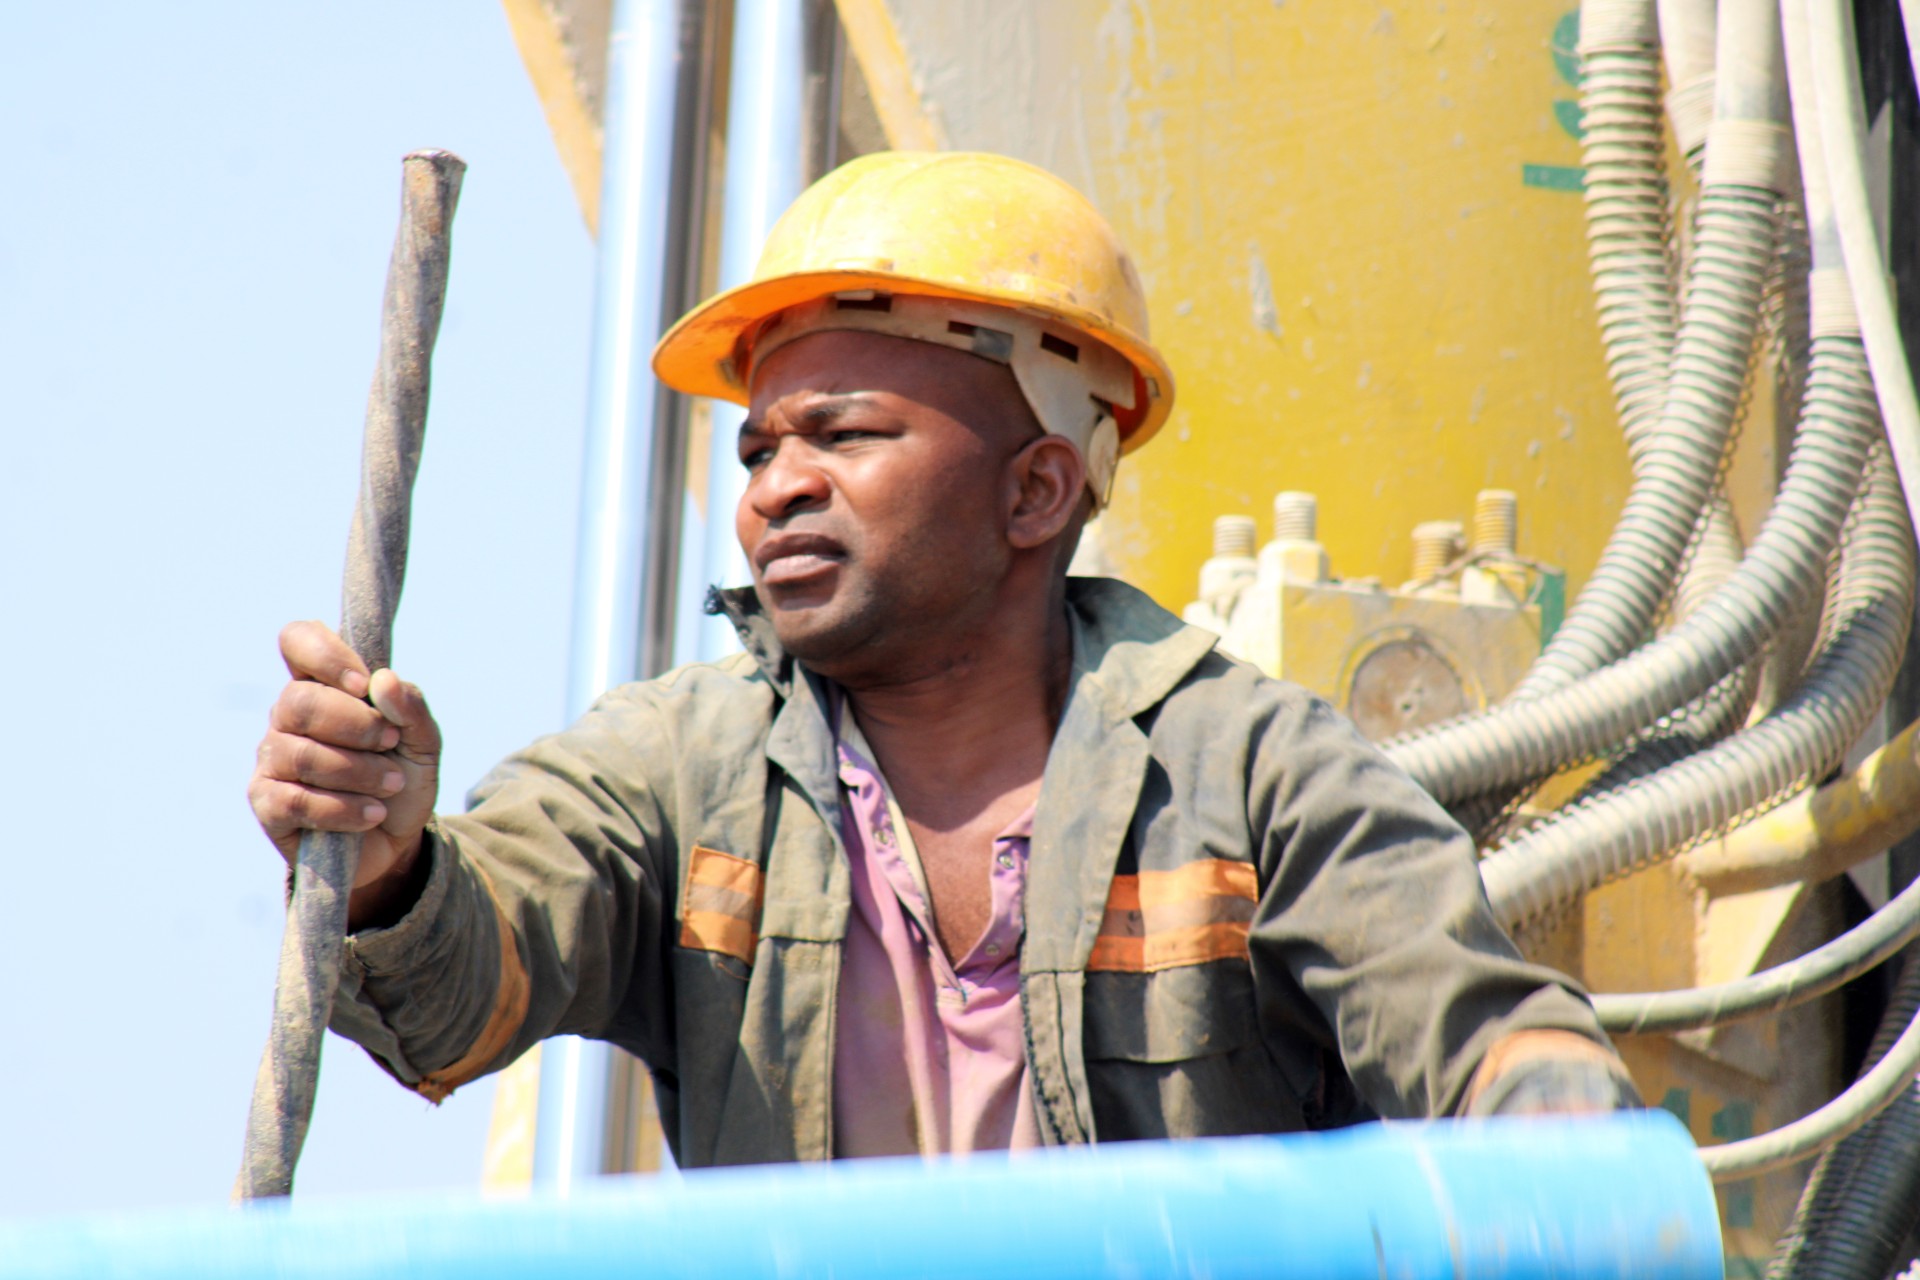 Borehole Experts Zimbabwe - The Best Borehole Drilling Companies in Zimbabwe